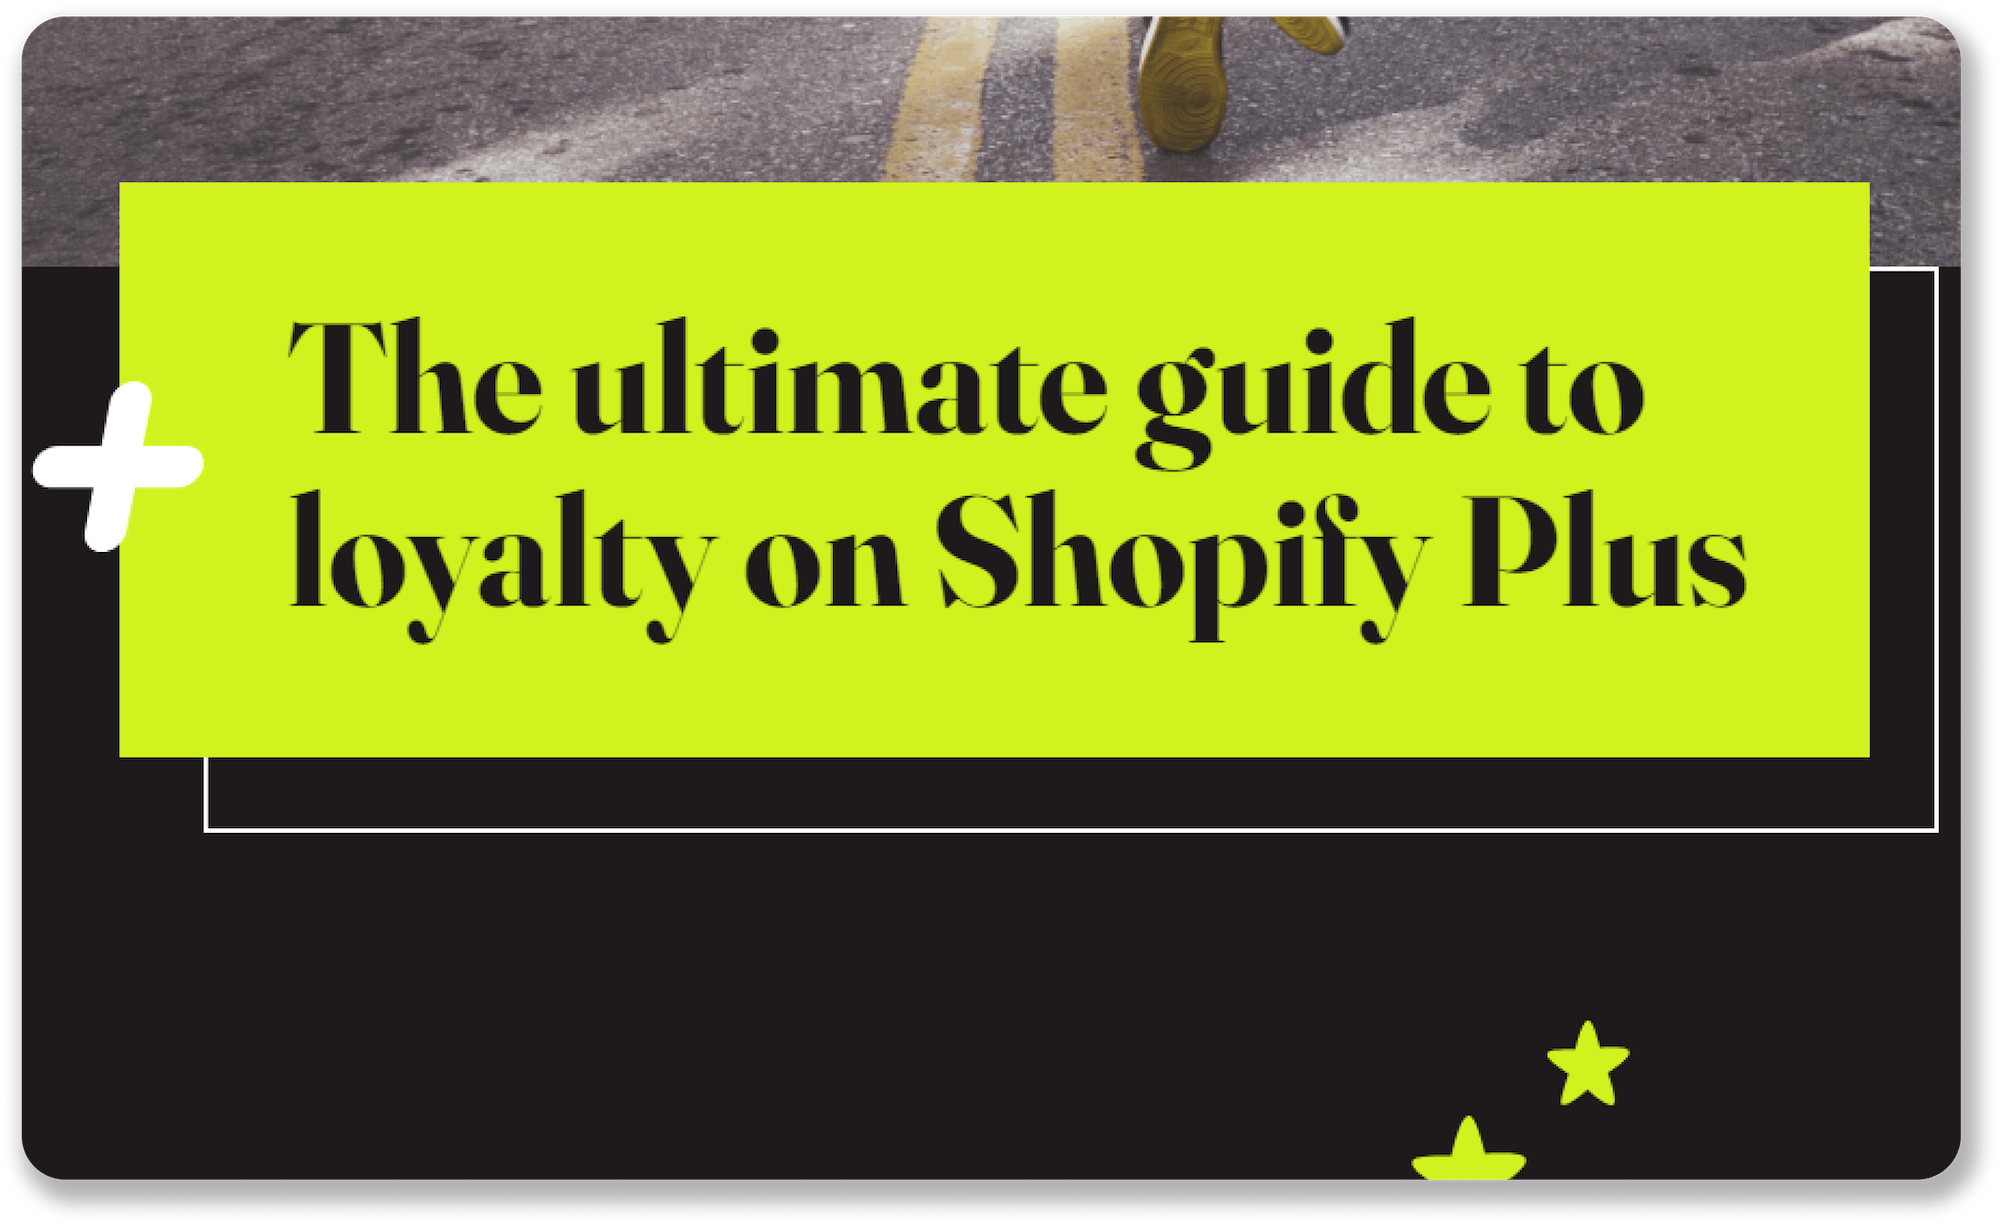 Shopify Plus Download Thank You